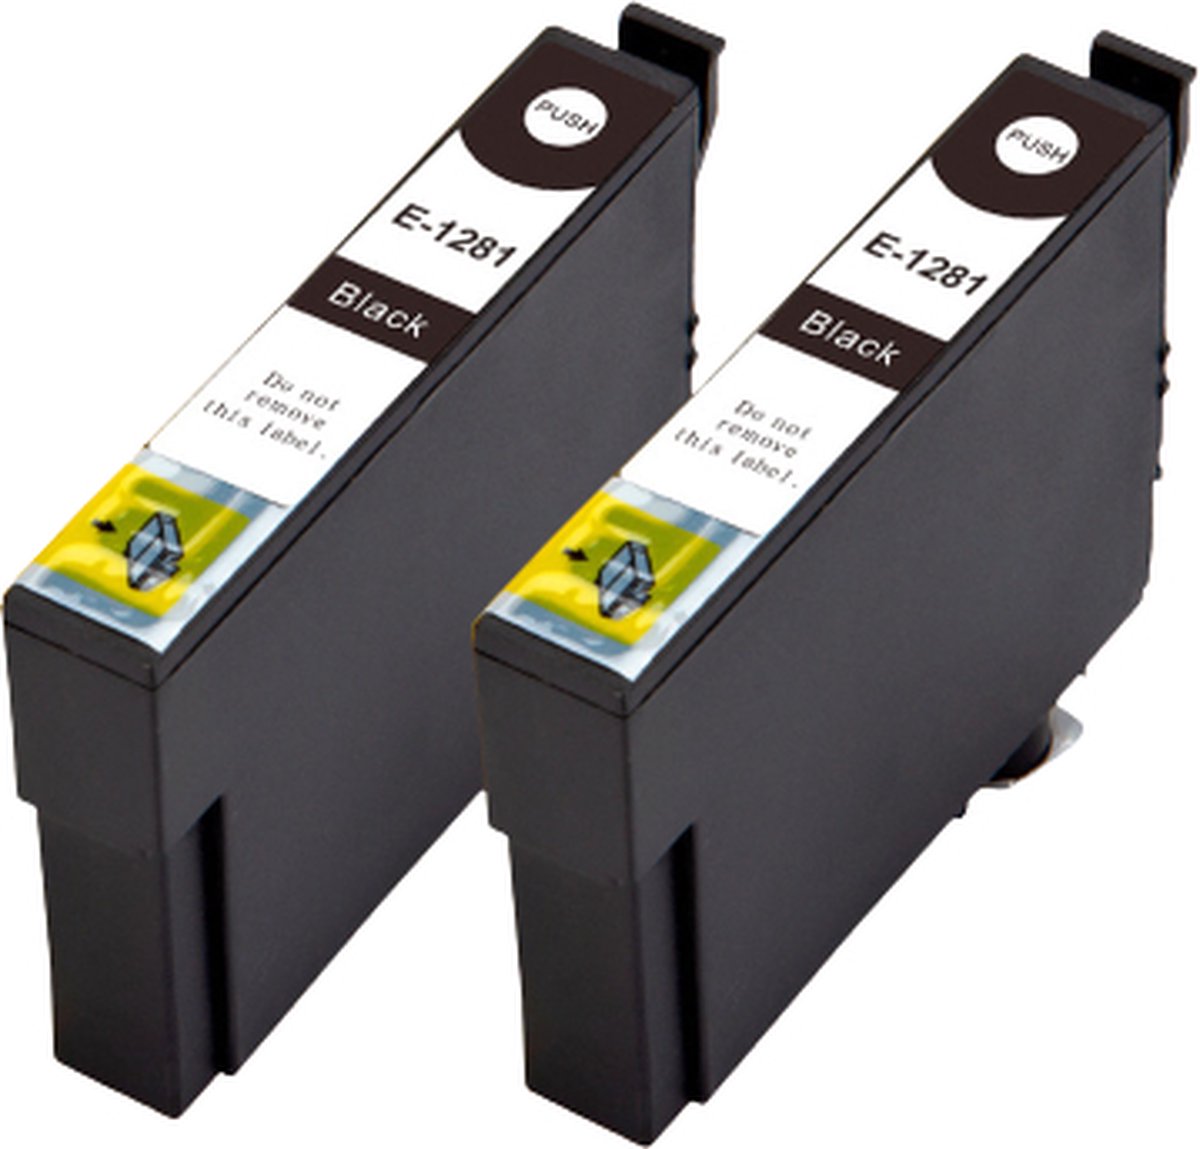 Inktcartridges 2x Zwart Geschikt voor Epson T1285 | Multipack - Geschikt voor Epson Stylus SX125, SX130, SX235W, SX420W, SX425W, SX435W, SX445W, Stylus Office BX305F, BX305FW - Inktpatronen - cartridges - patronen